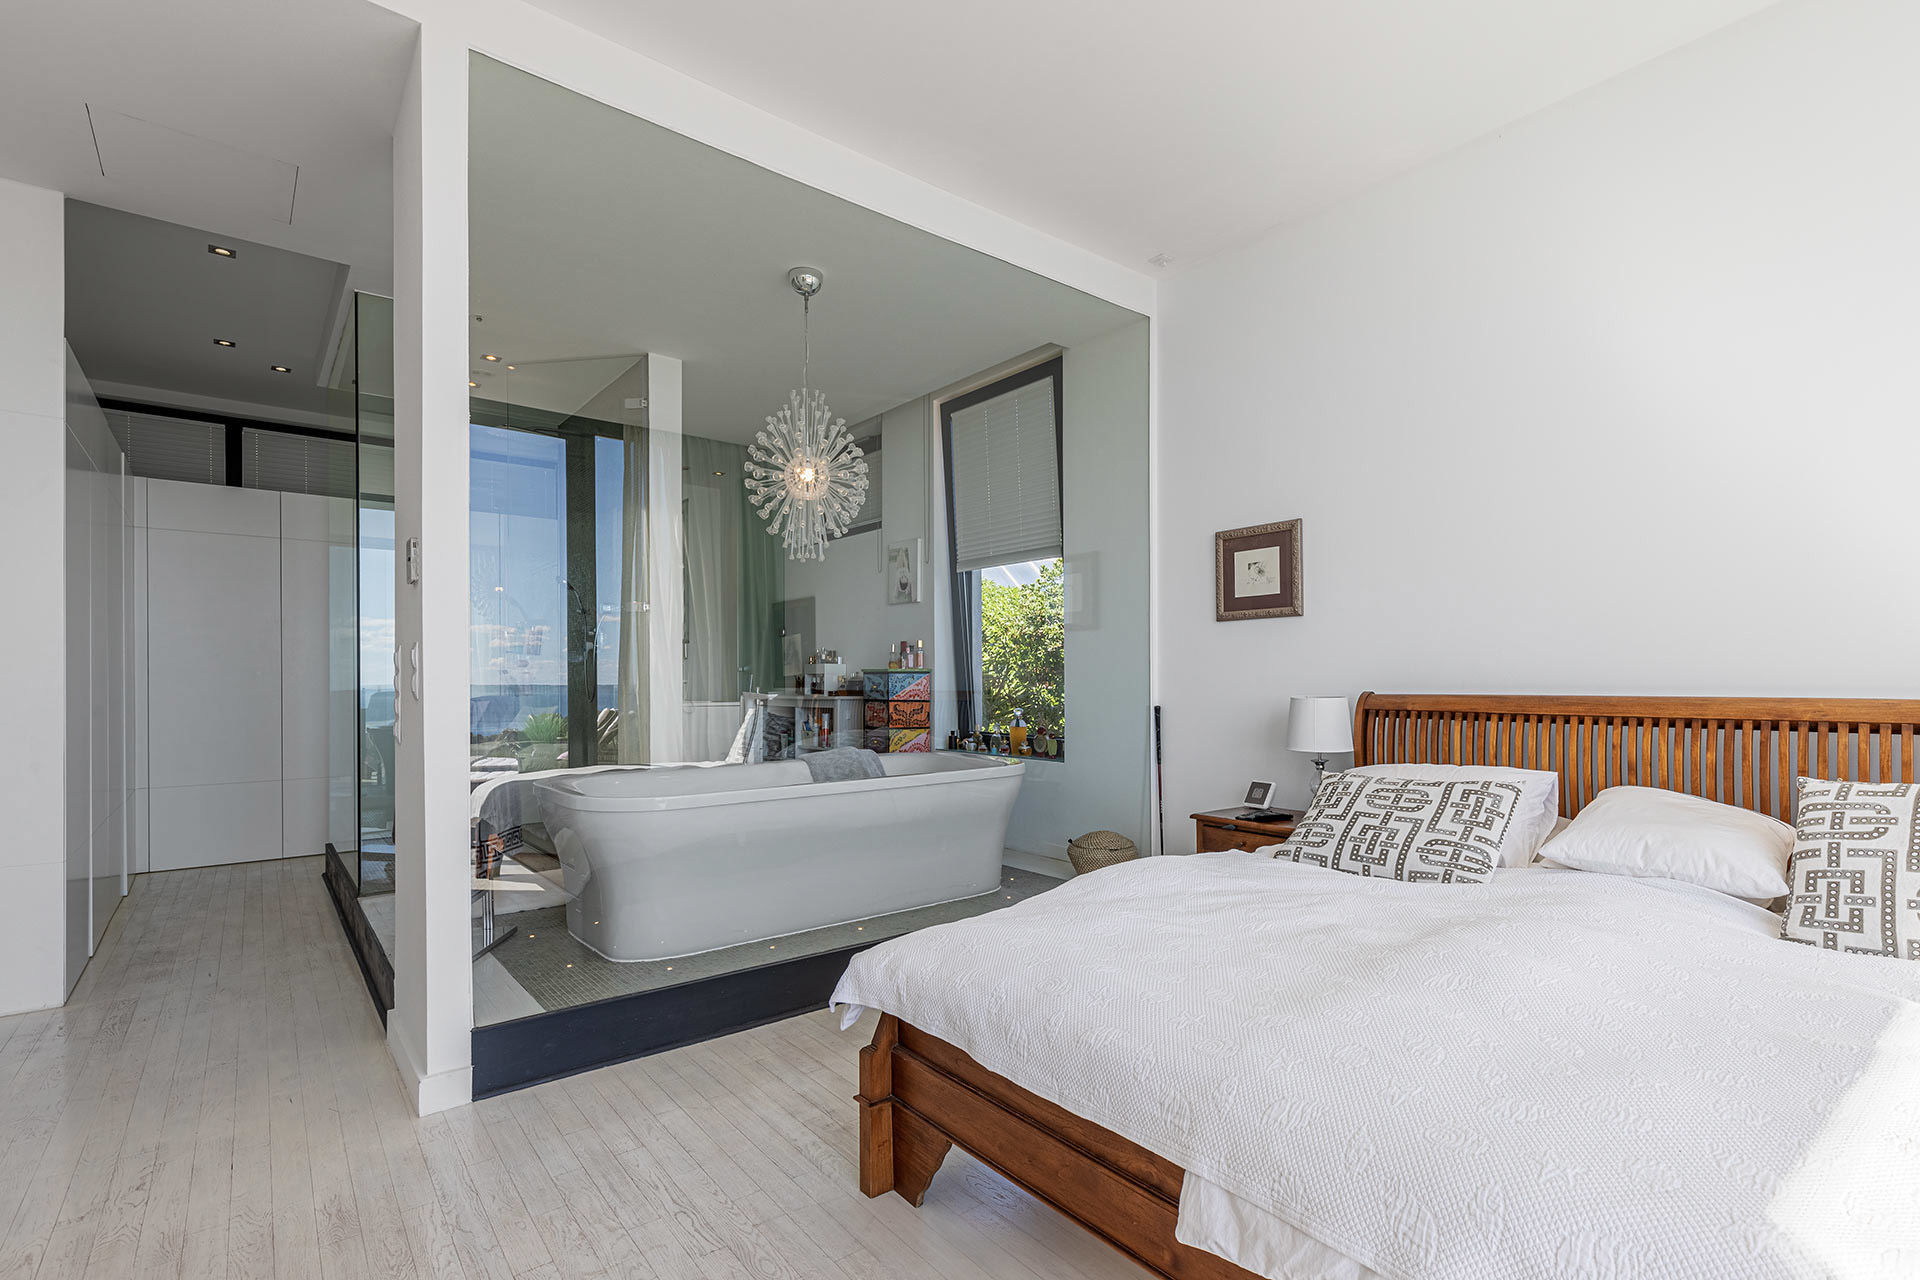 Moderne Villa mit Meerblick in Costa d’en Blanes - Hauptschlafzimmer mit Bad en Suite